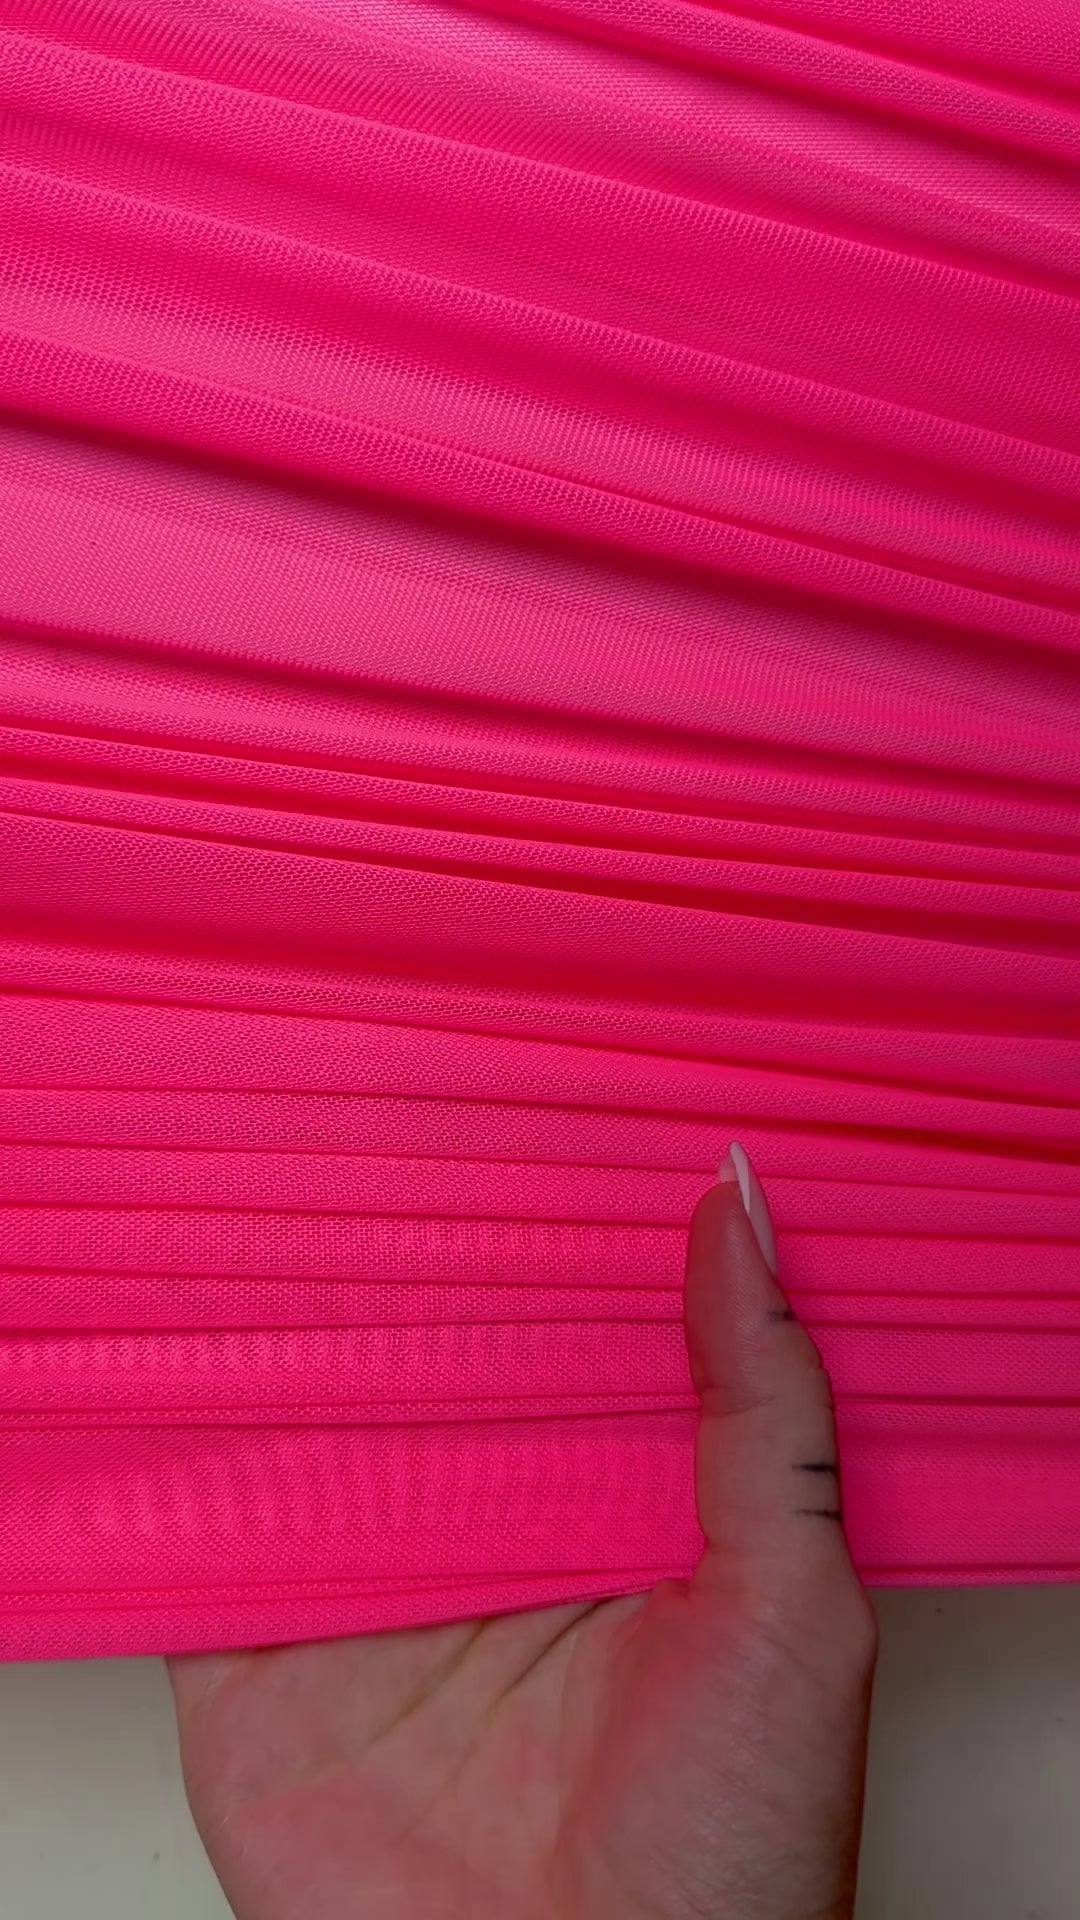 neon pink 4way stretch power mesh, dark pink power mesh,light pink power mesh, fuchsia power mesh